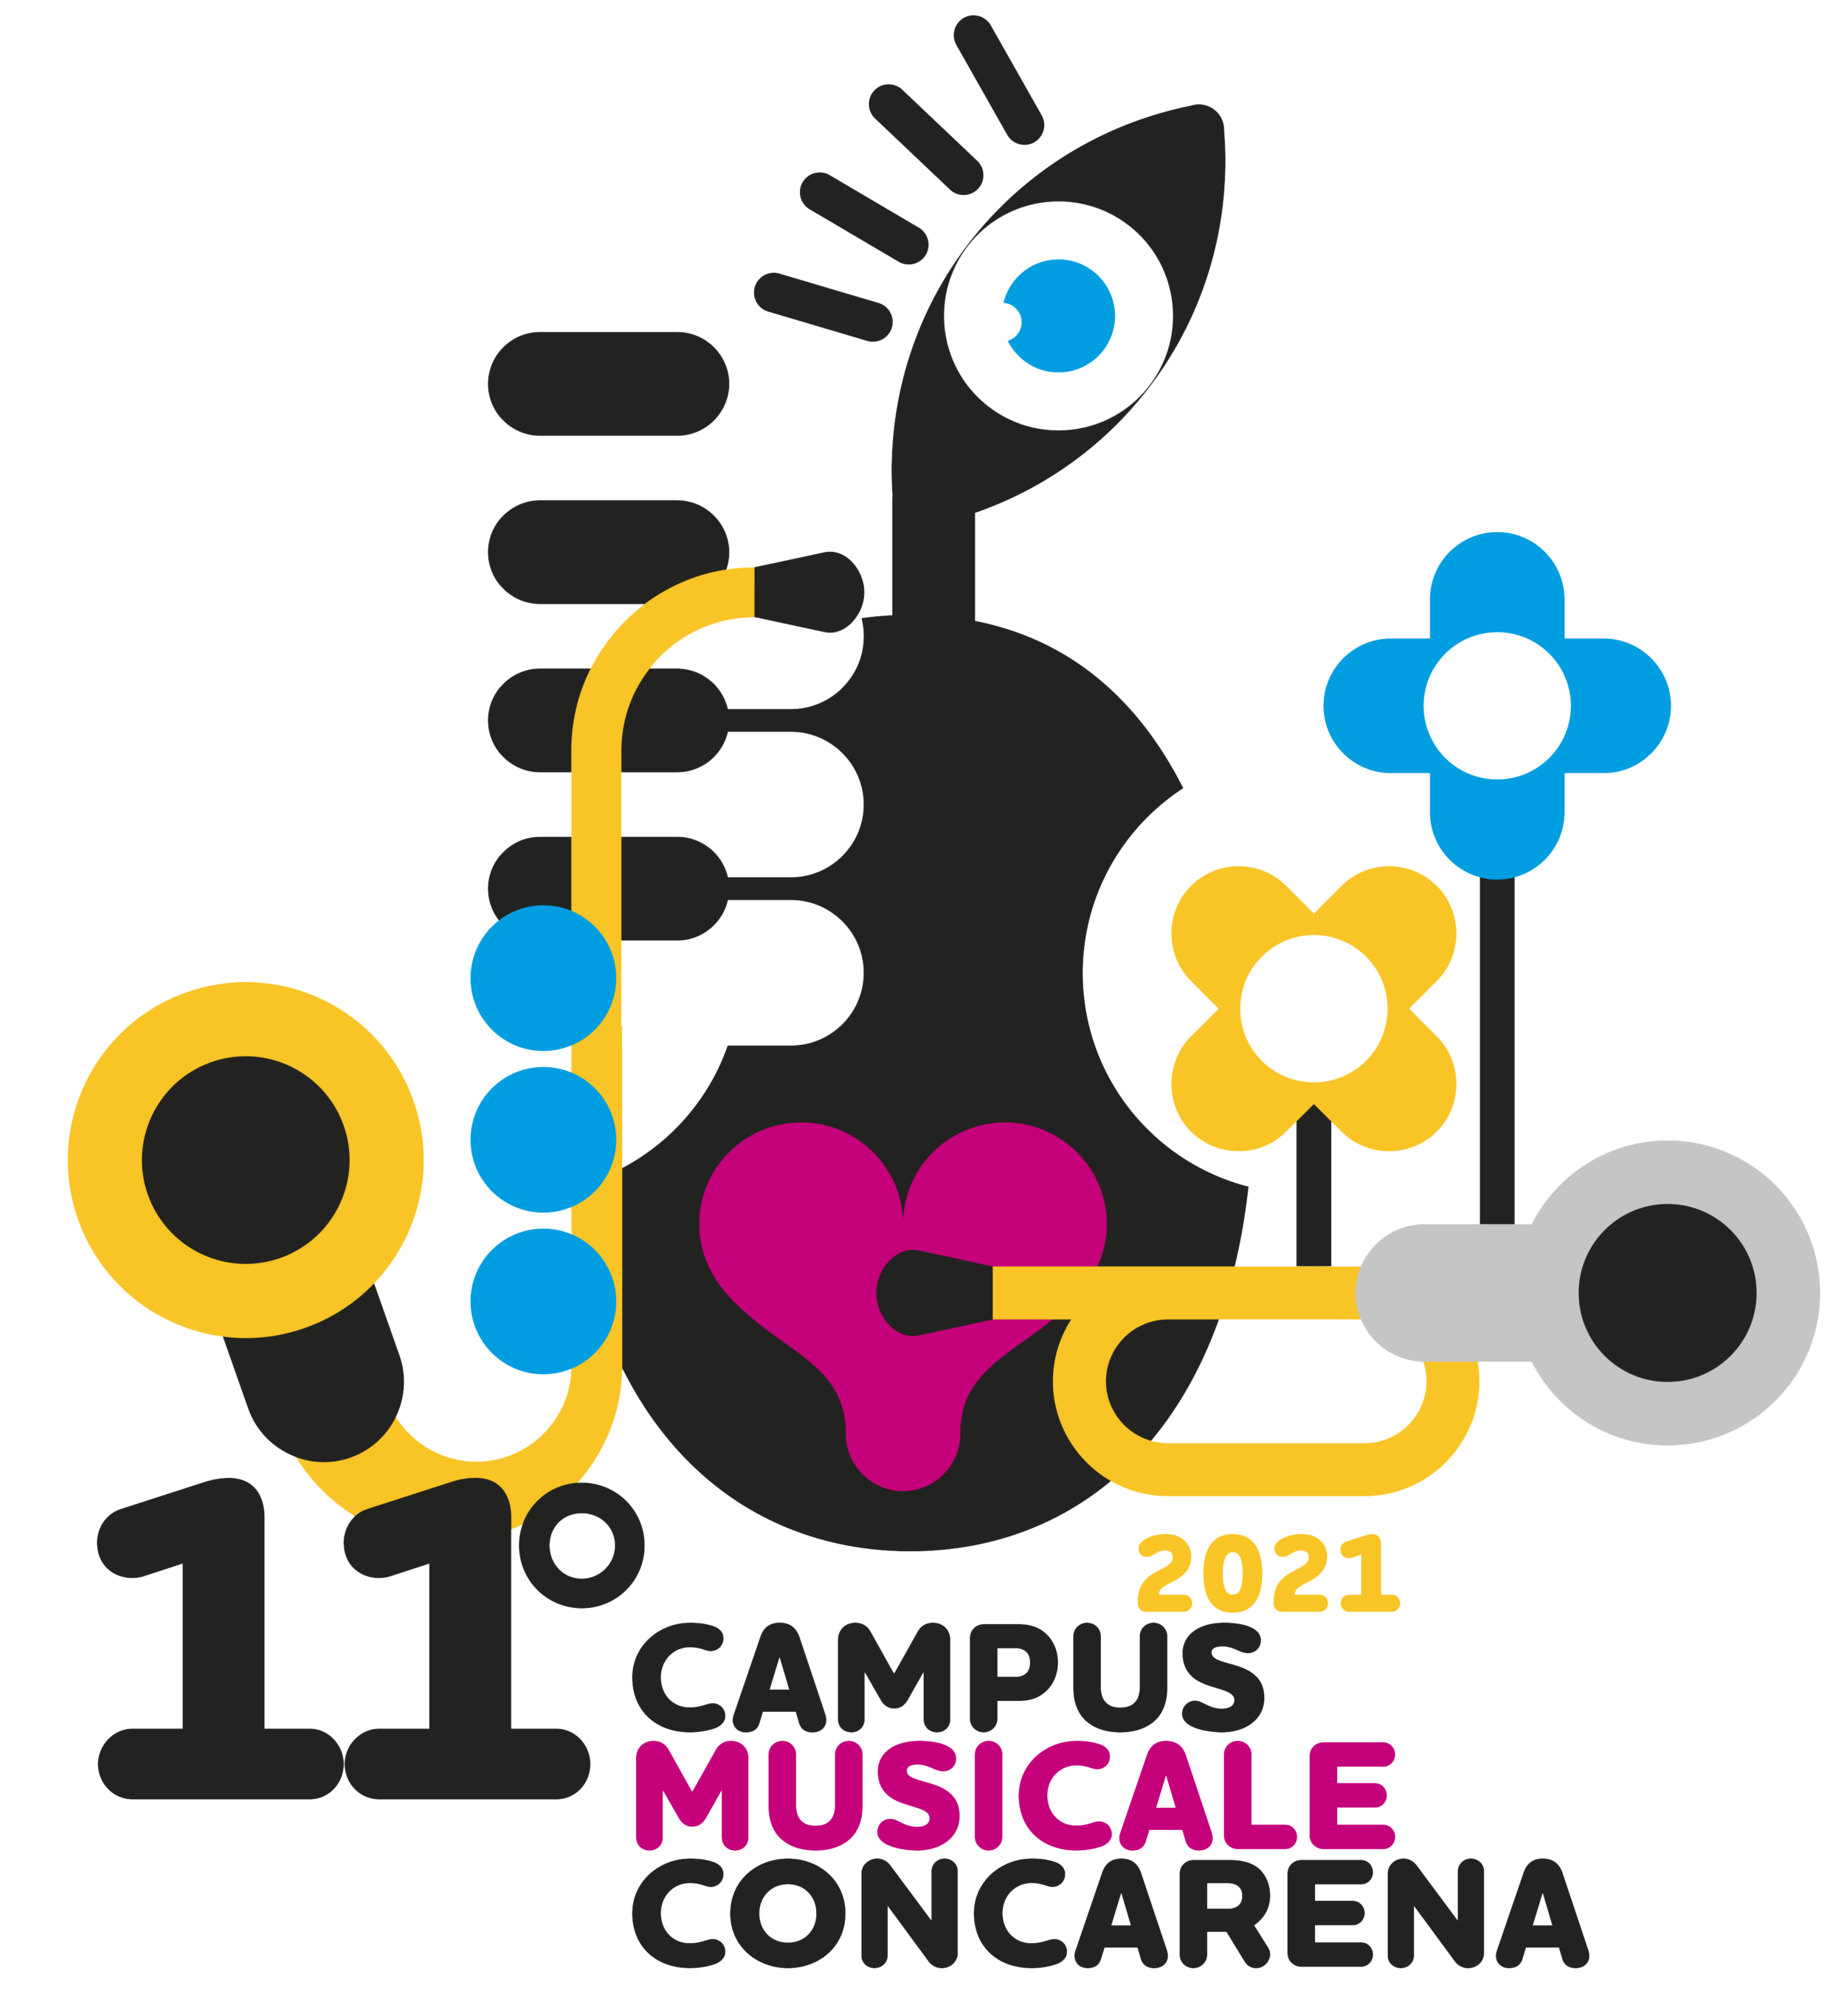 CAMPUS MUSICALE CONCARENA 2021 – 11° edizione APERTE LE ISCRIZIONI